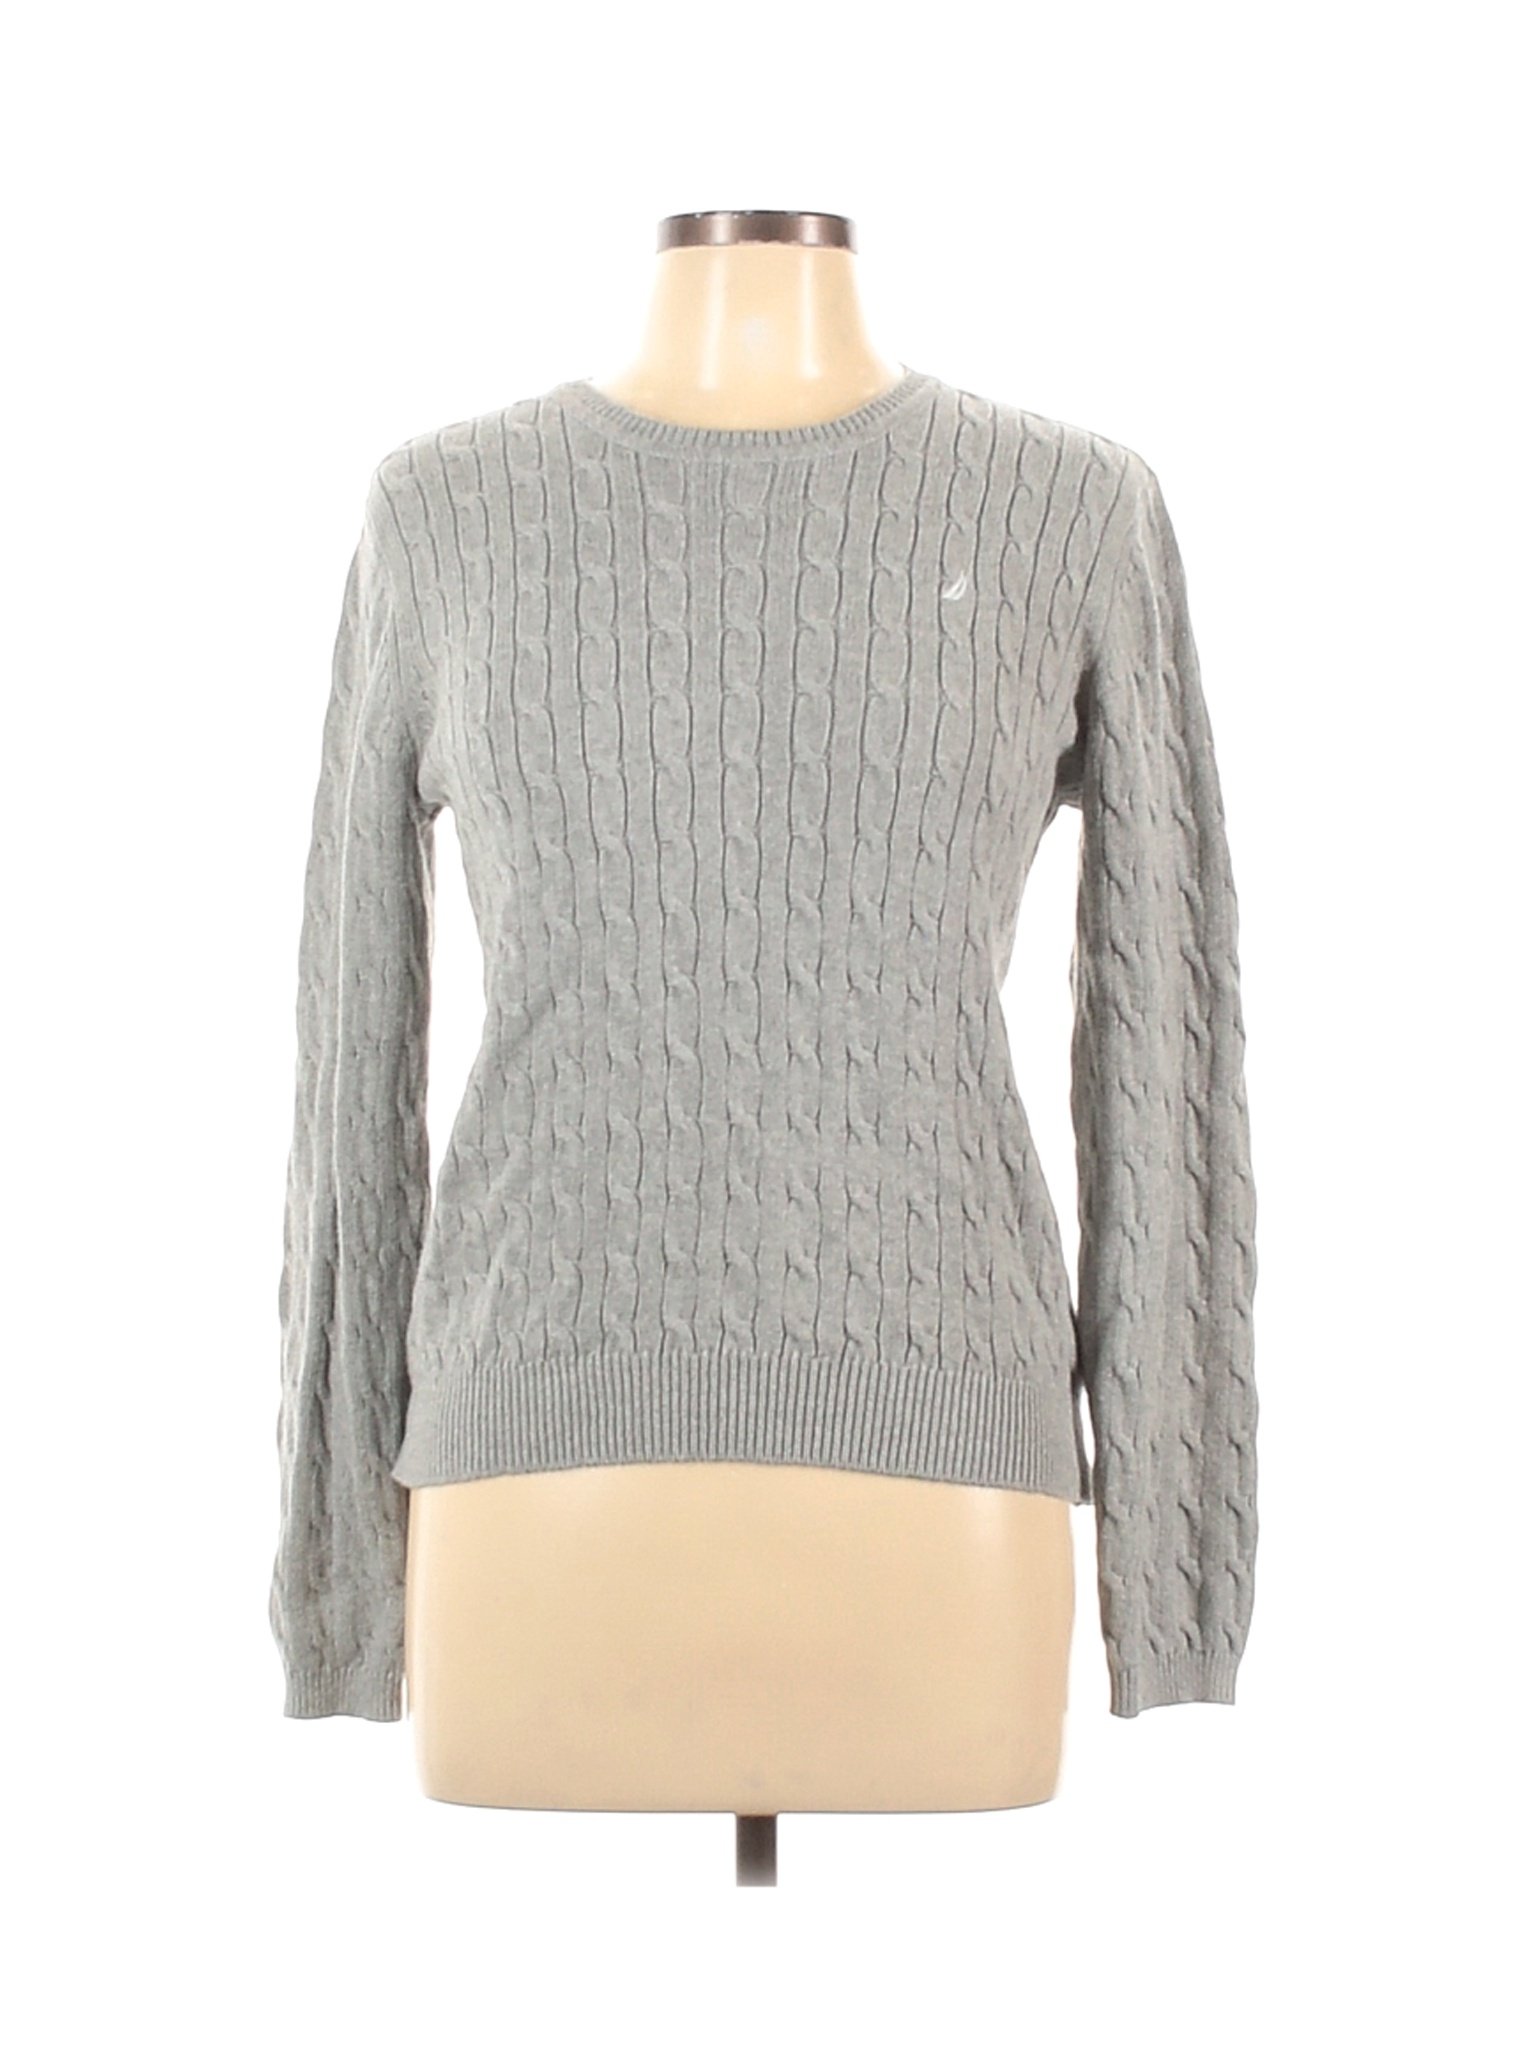 Nautica Women Gray Pullover Sweater L | eBay